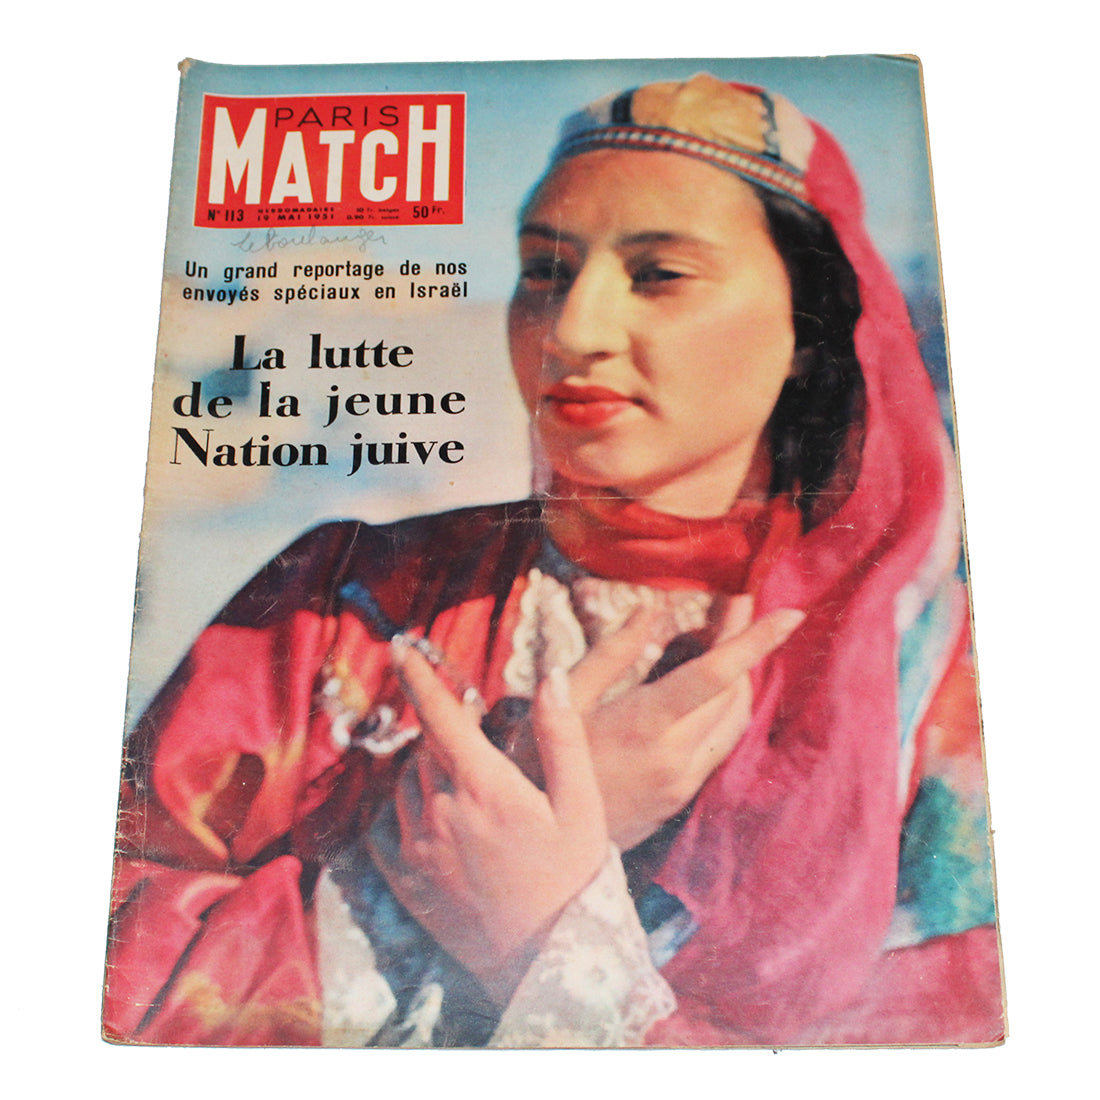 Magazine / revue Paris Match n° 113 du 19/05/1951 Israël la jeune Nation juive